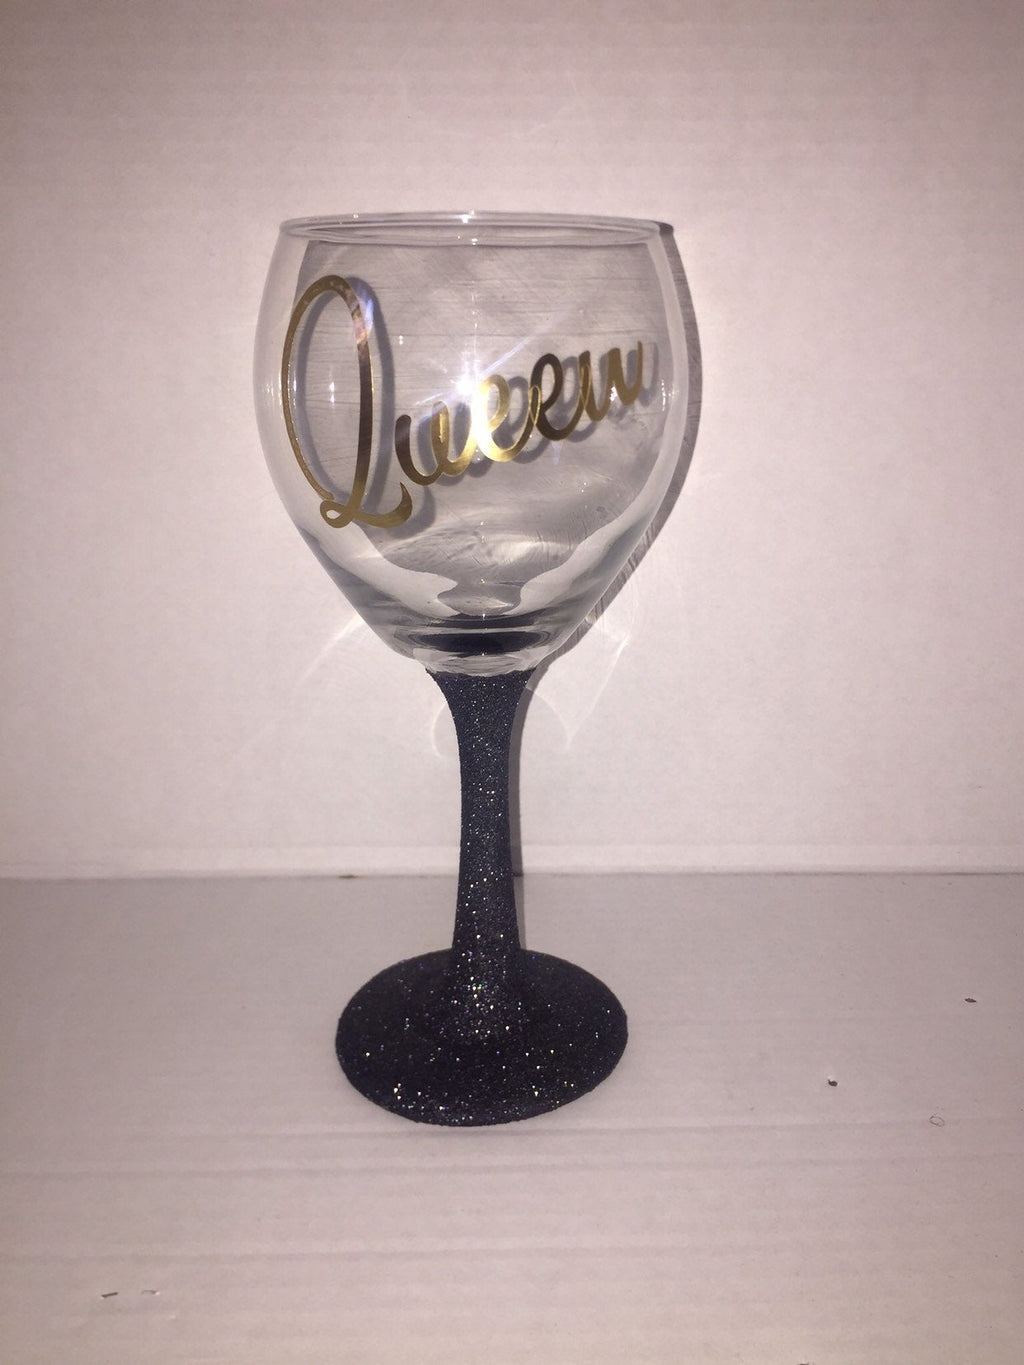 Queen wine glass